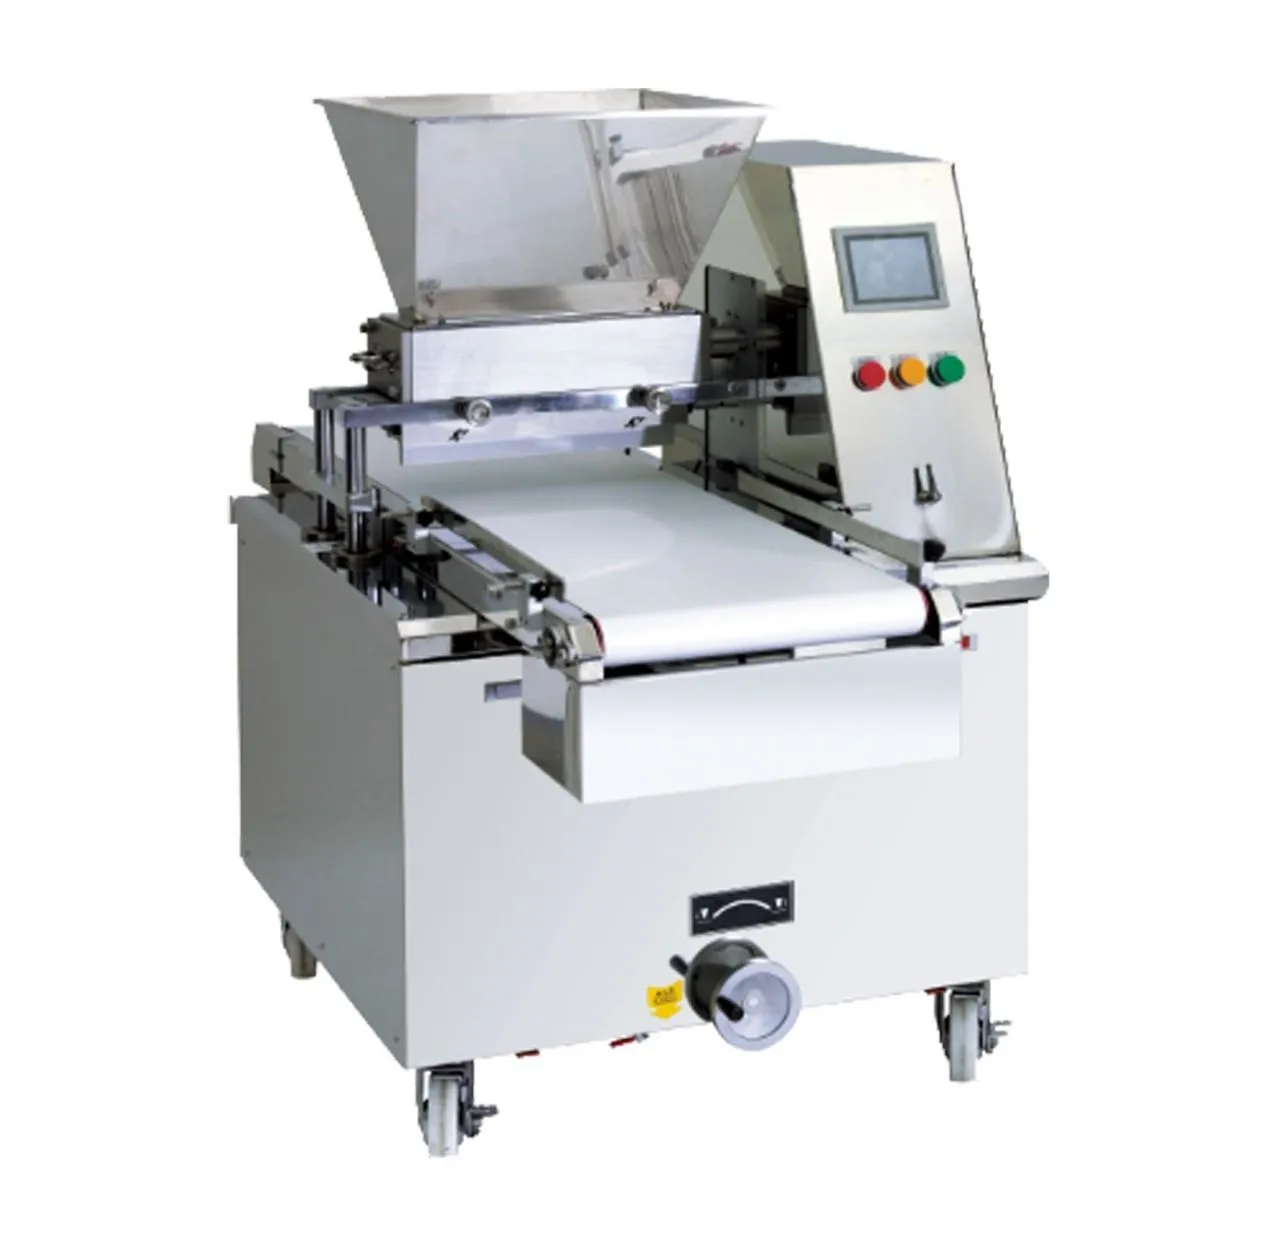 Buena calidad Capacidad de producción 90-120 kg/h 400kg máquina de galletas giratorias de peso CBM2.3 para fábrica de galletas para entrenamiento de horneado